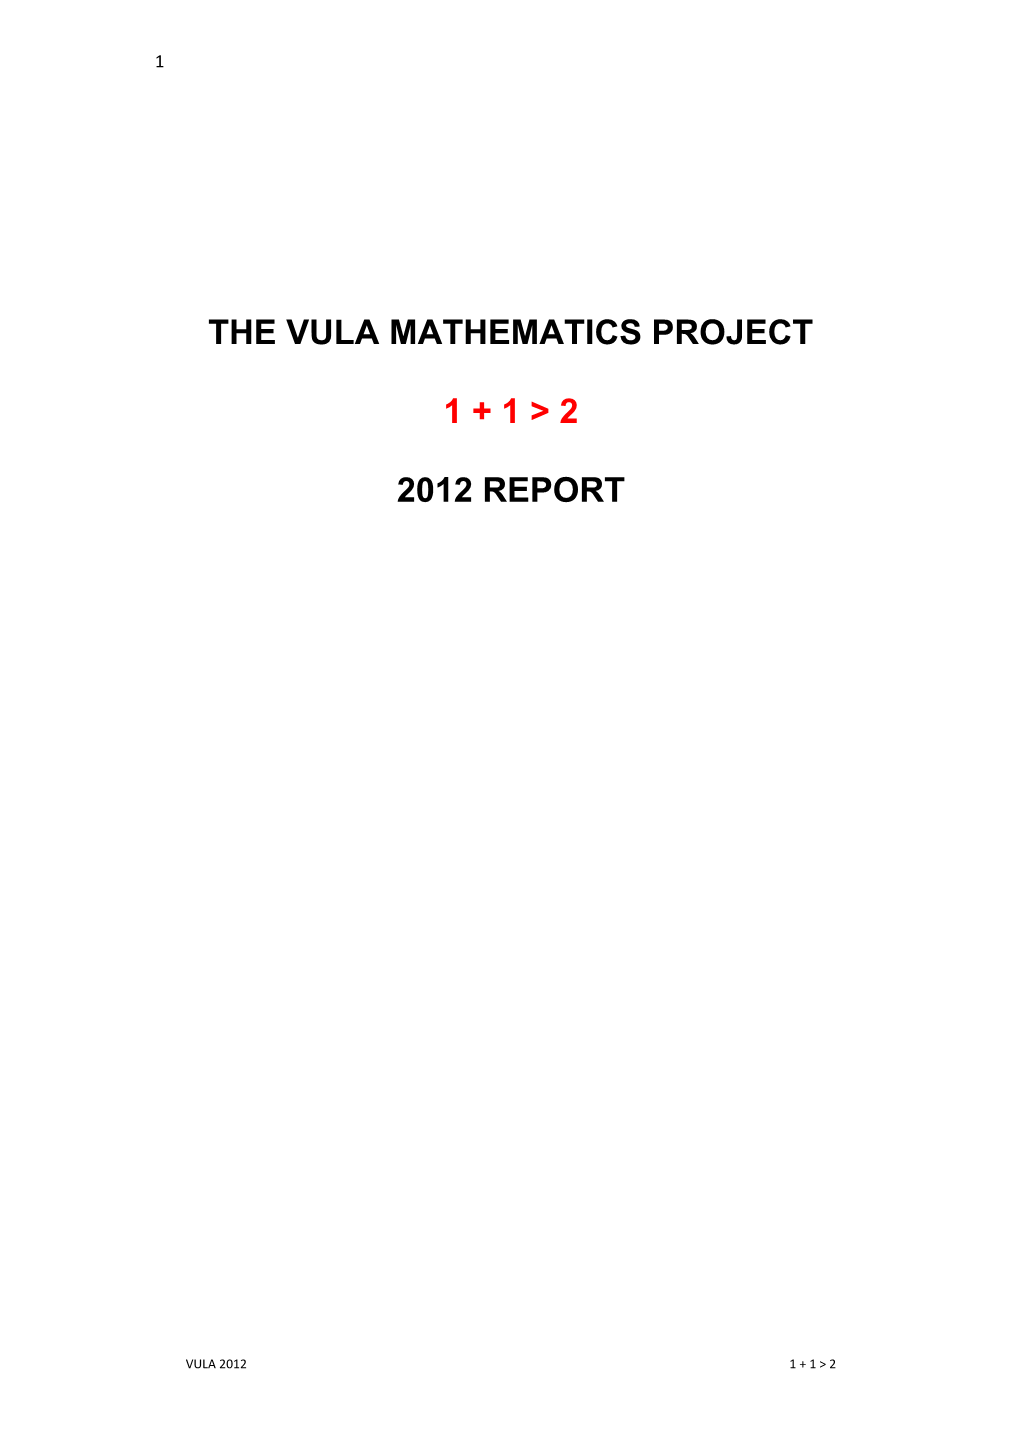 The Vula Mathematics Project